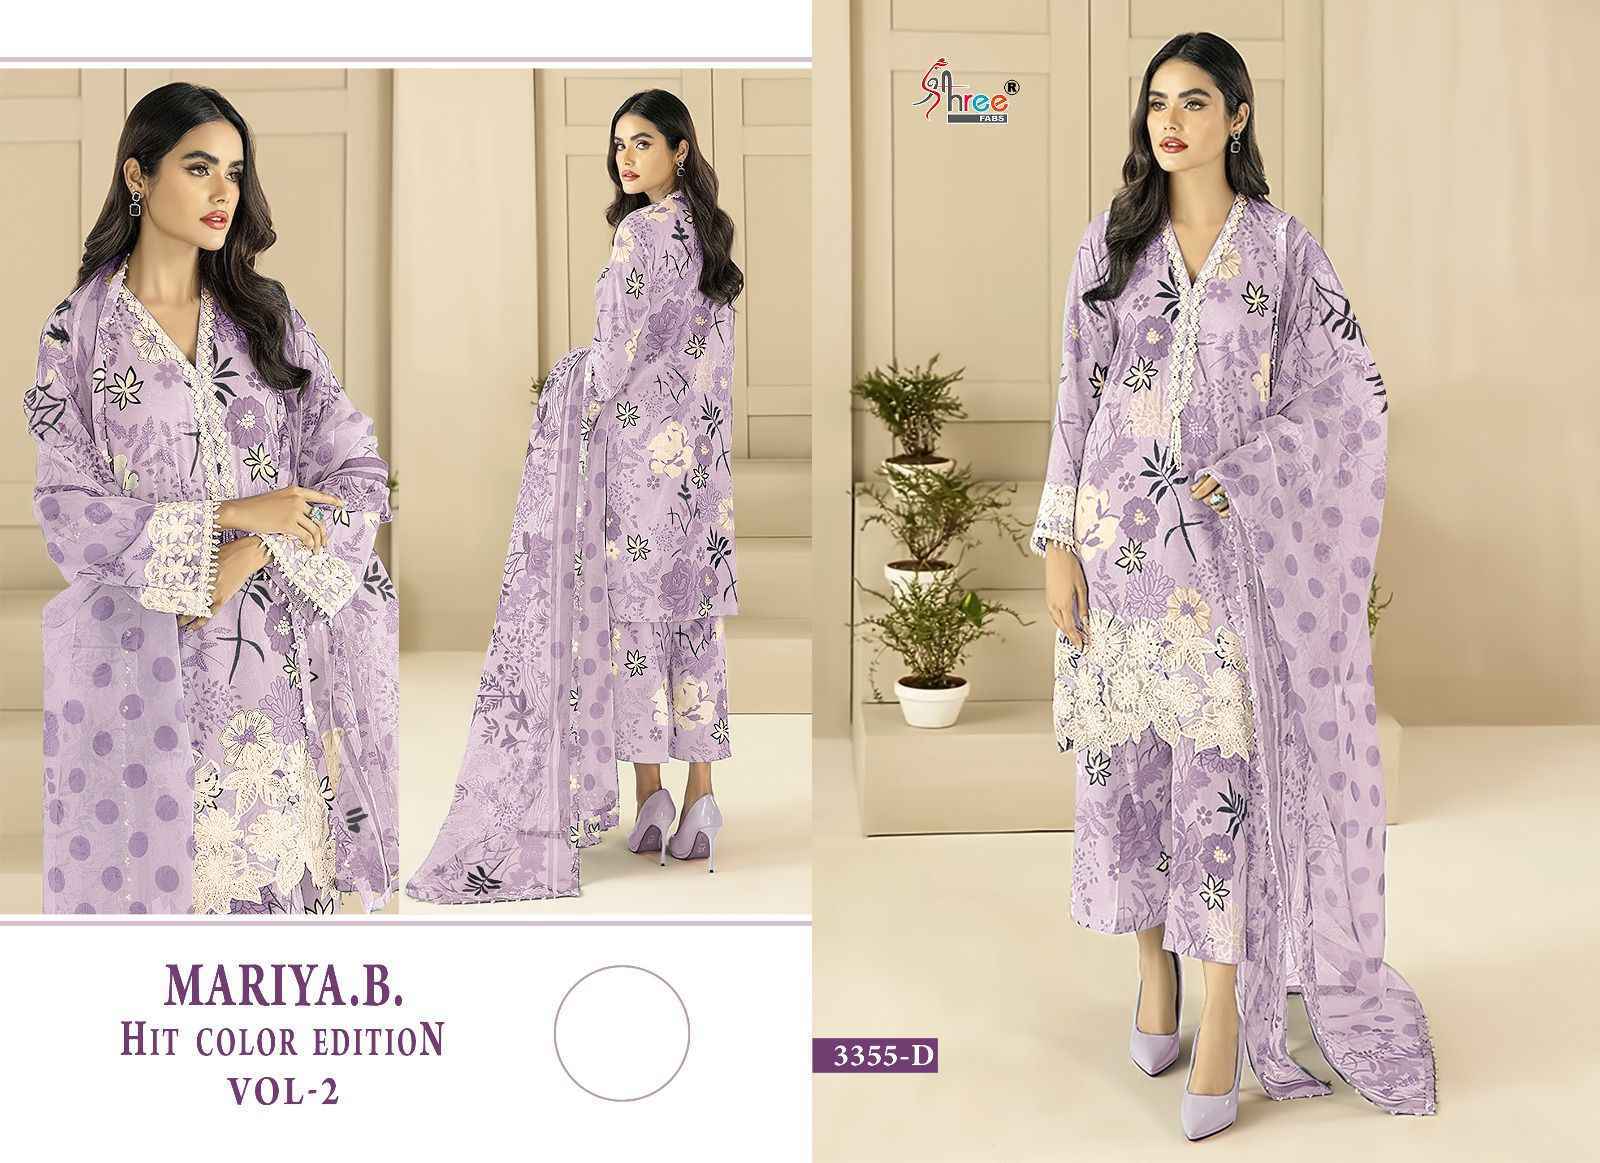 Shree Fabs Maria B Hit Color Edition Vol 2 Cotton Dress Material 4 pcs 